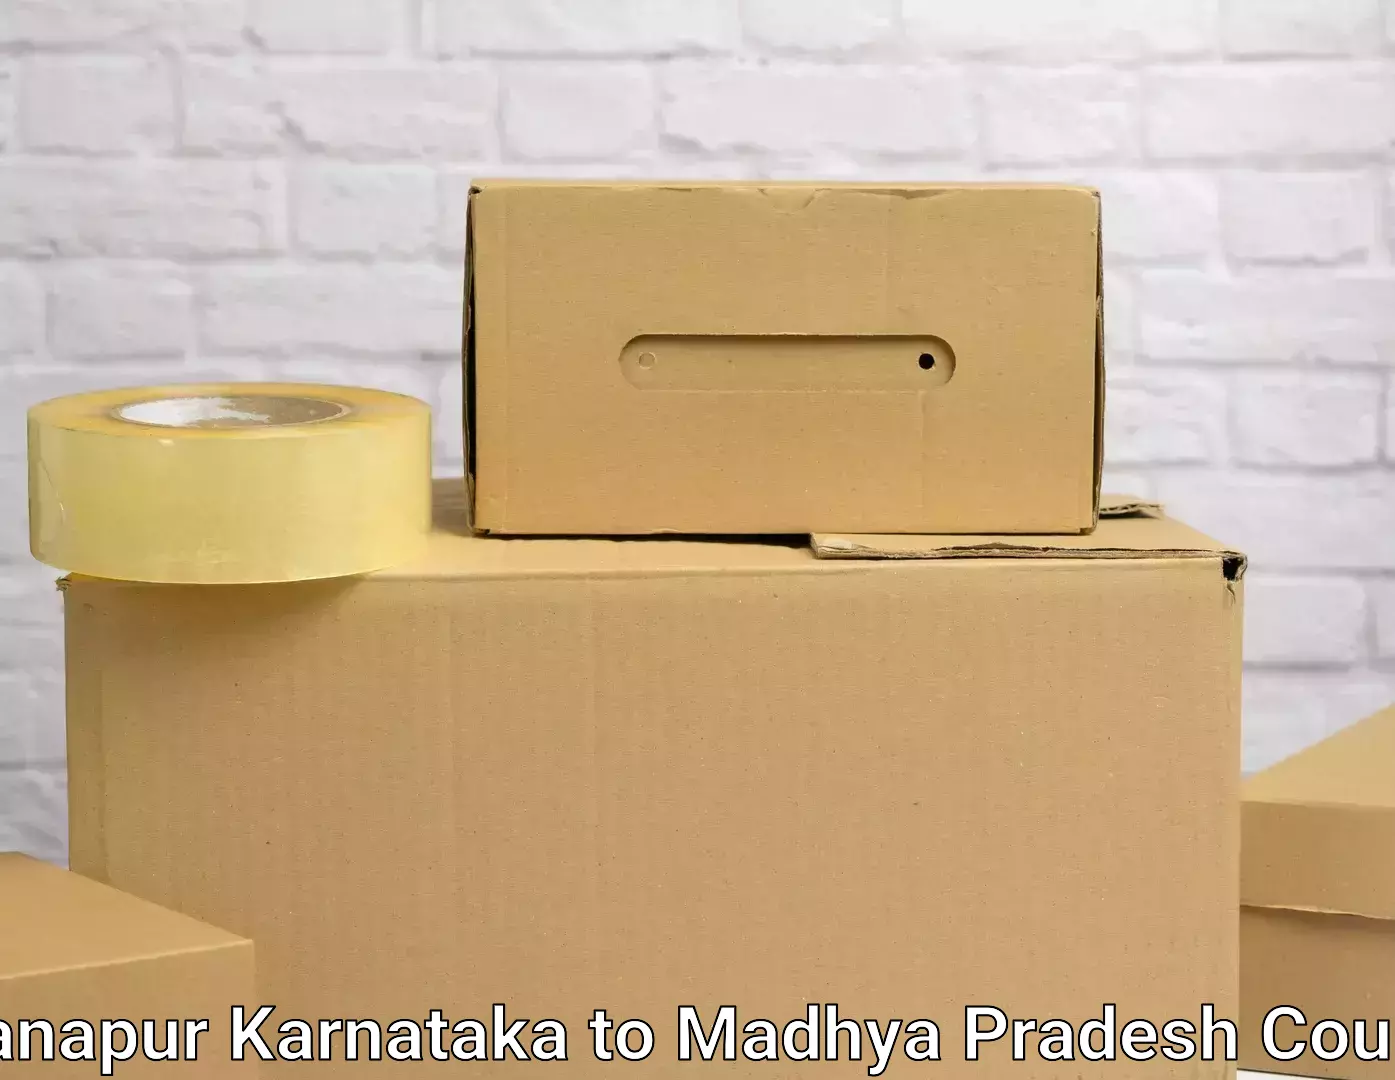 Moving and handling services in Khanapur Karnataka to Harda